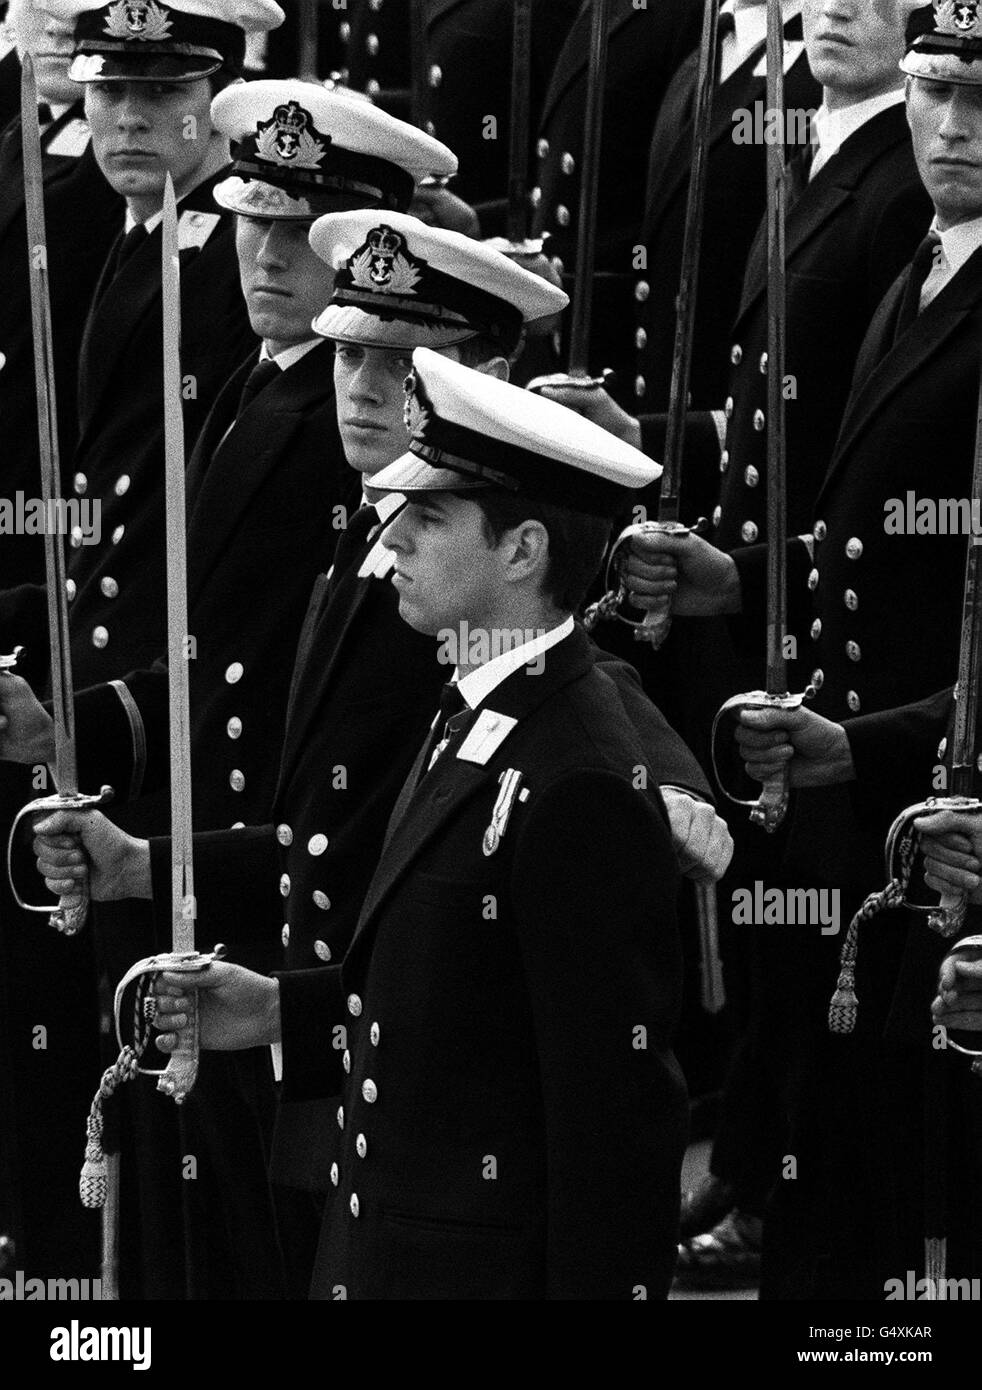 Prince Andrew Navy Stock Photo